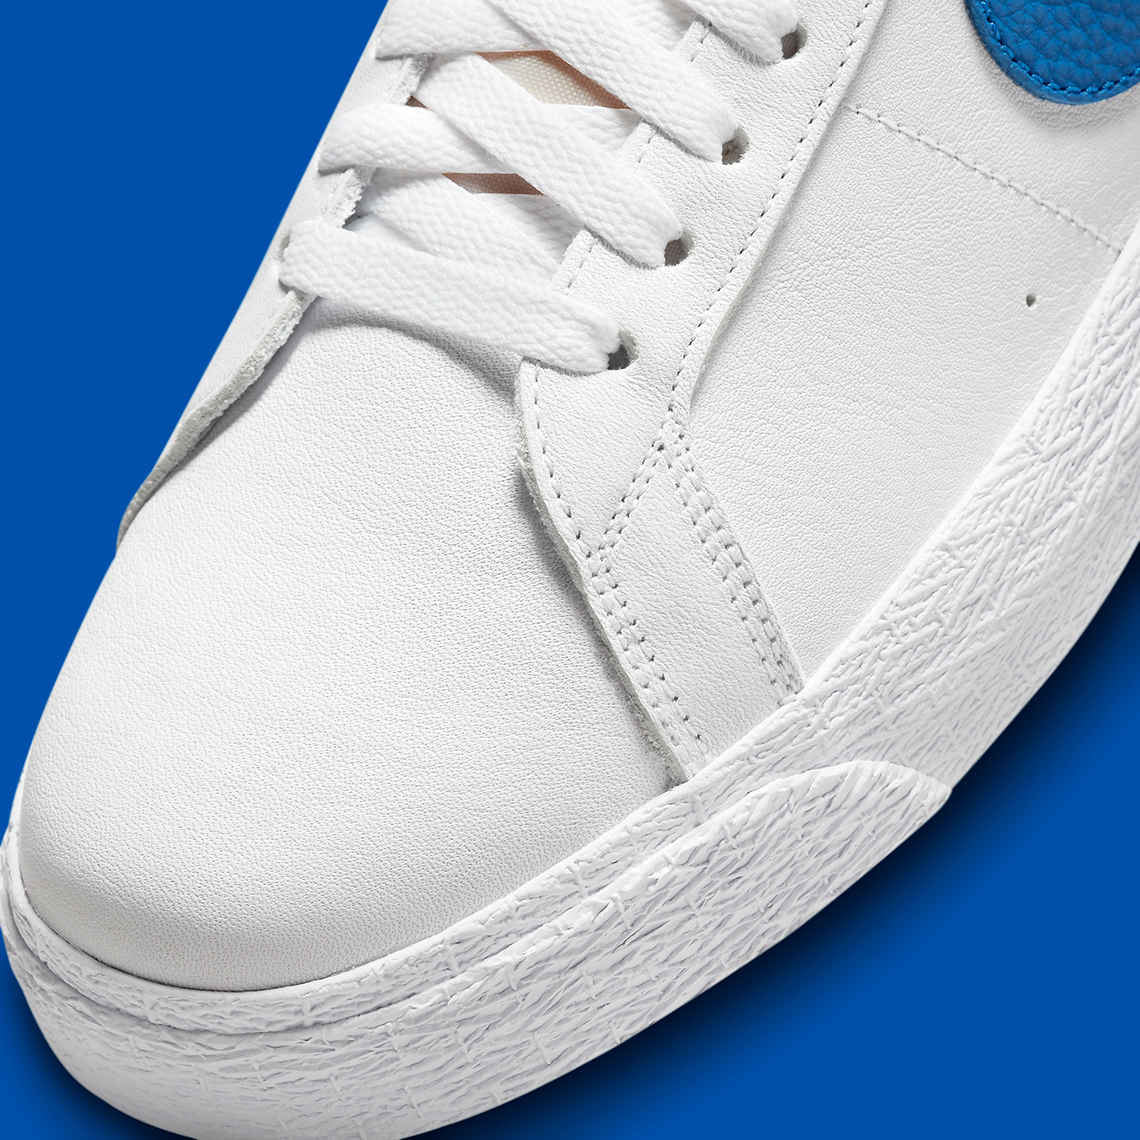 Nike SB Blazer Mid ISO White Blue DH6970-100 | SneakerNews.com